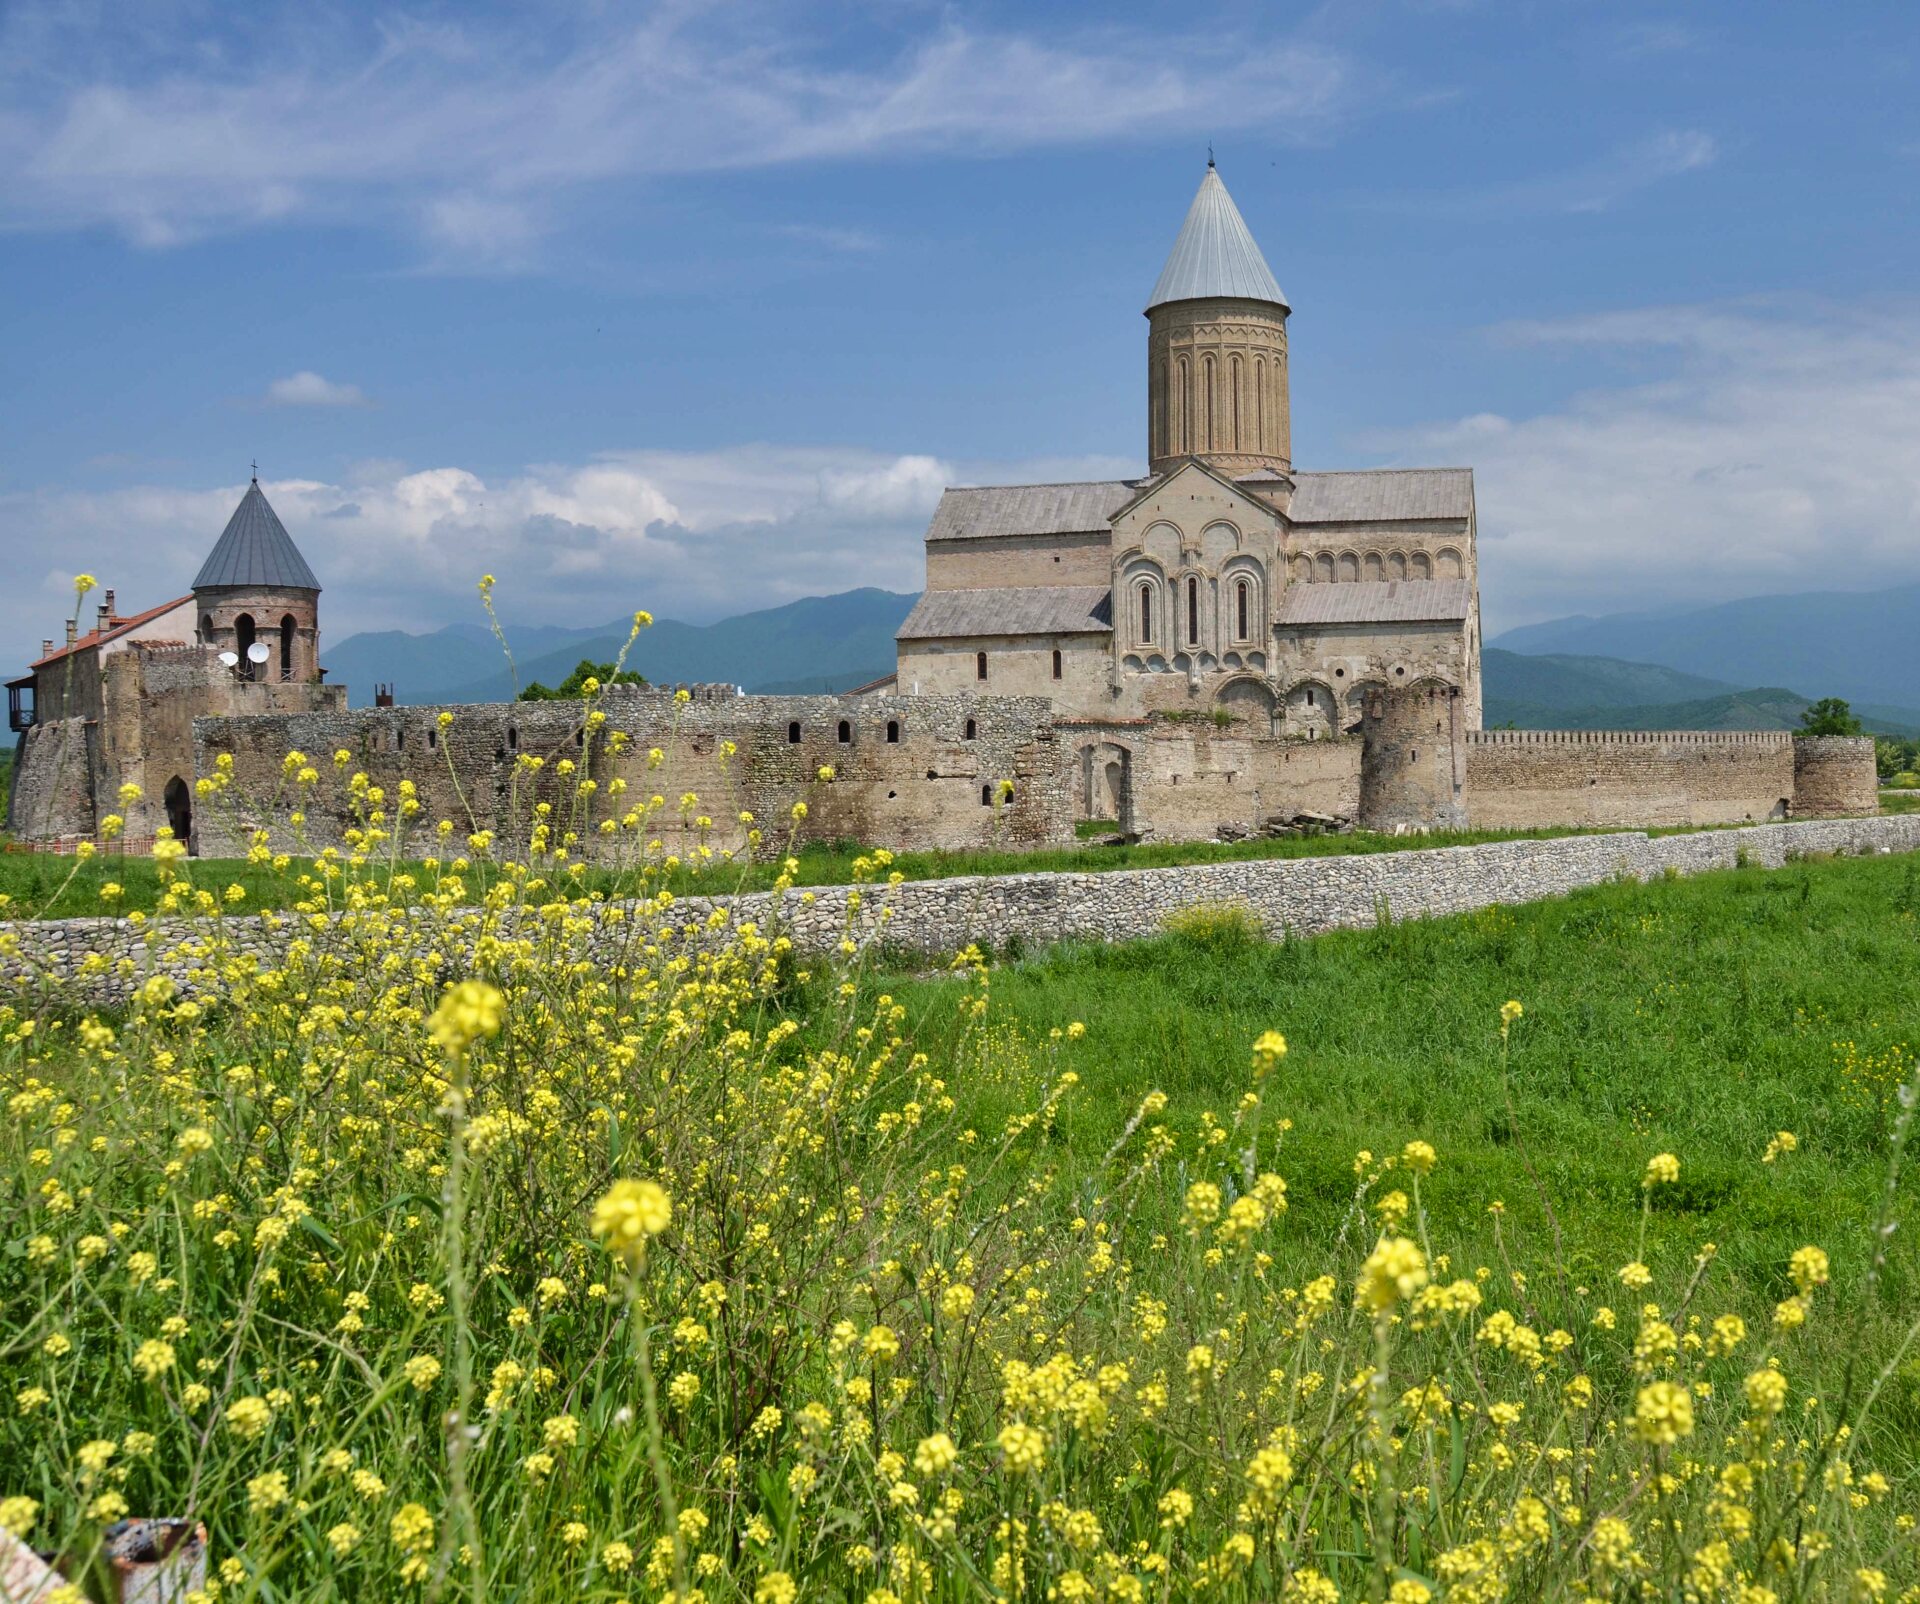 Gelbe Blumen blühen auf einer Wiese vor einer Klosteranlage aus hellem Naturstein. Die Anlage hat den charakteristischen Rundturm georgischer Sakralarchitektur.